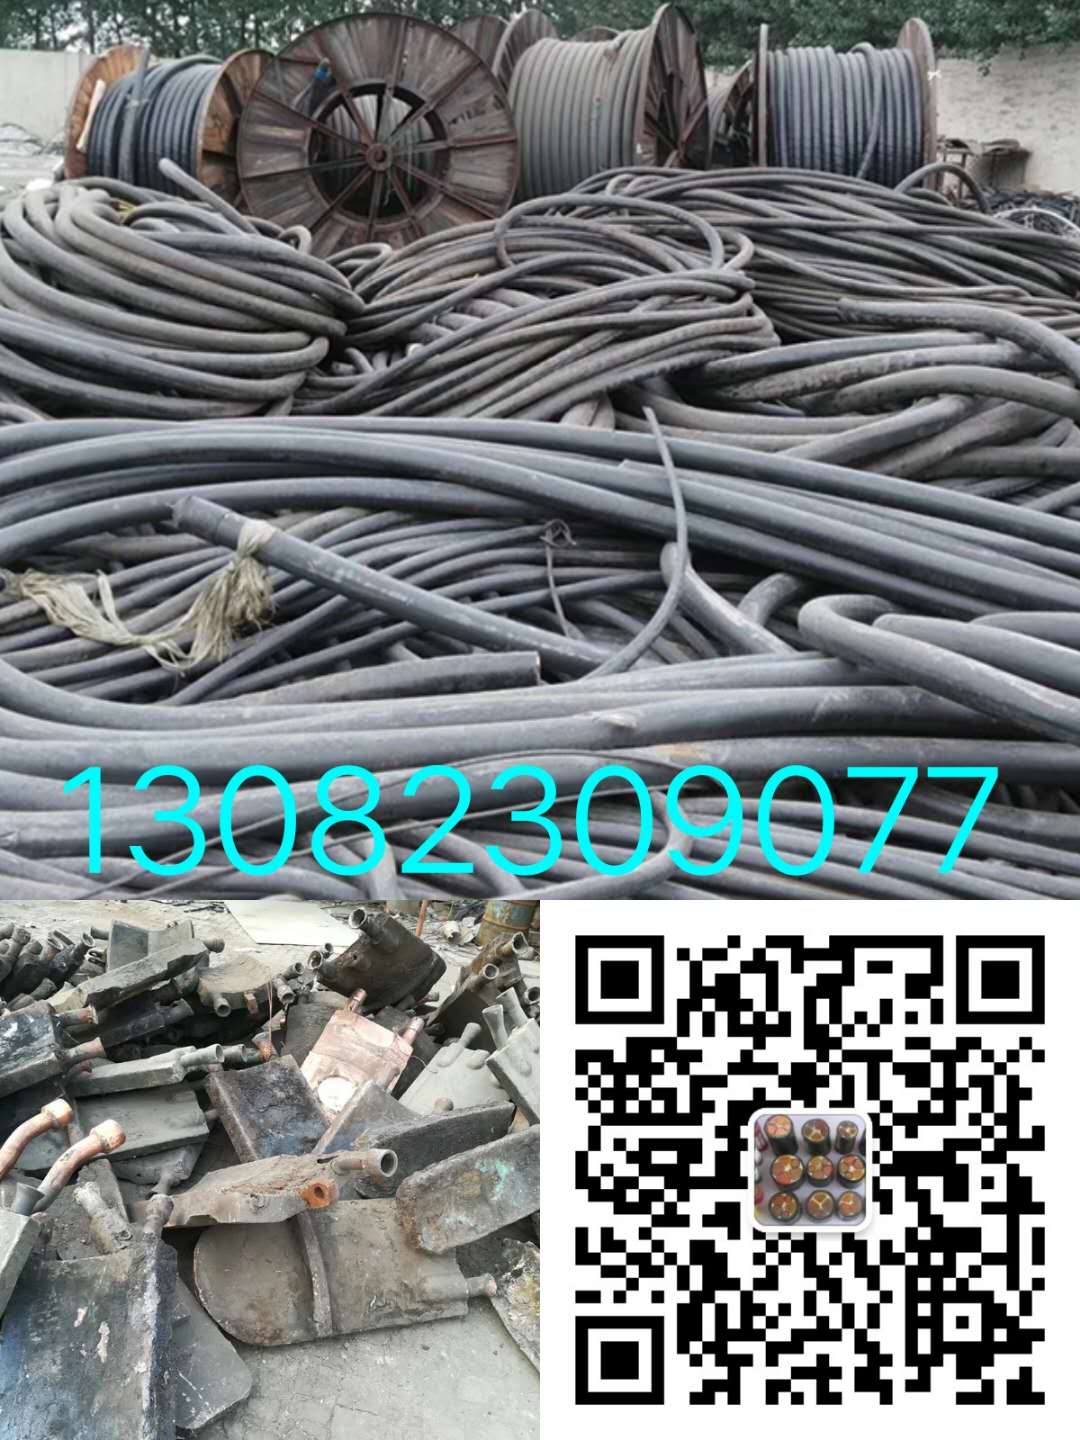 东城电缆回收:东城整盘电缆回收价钱